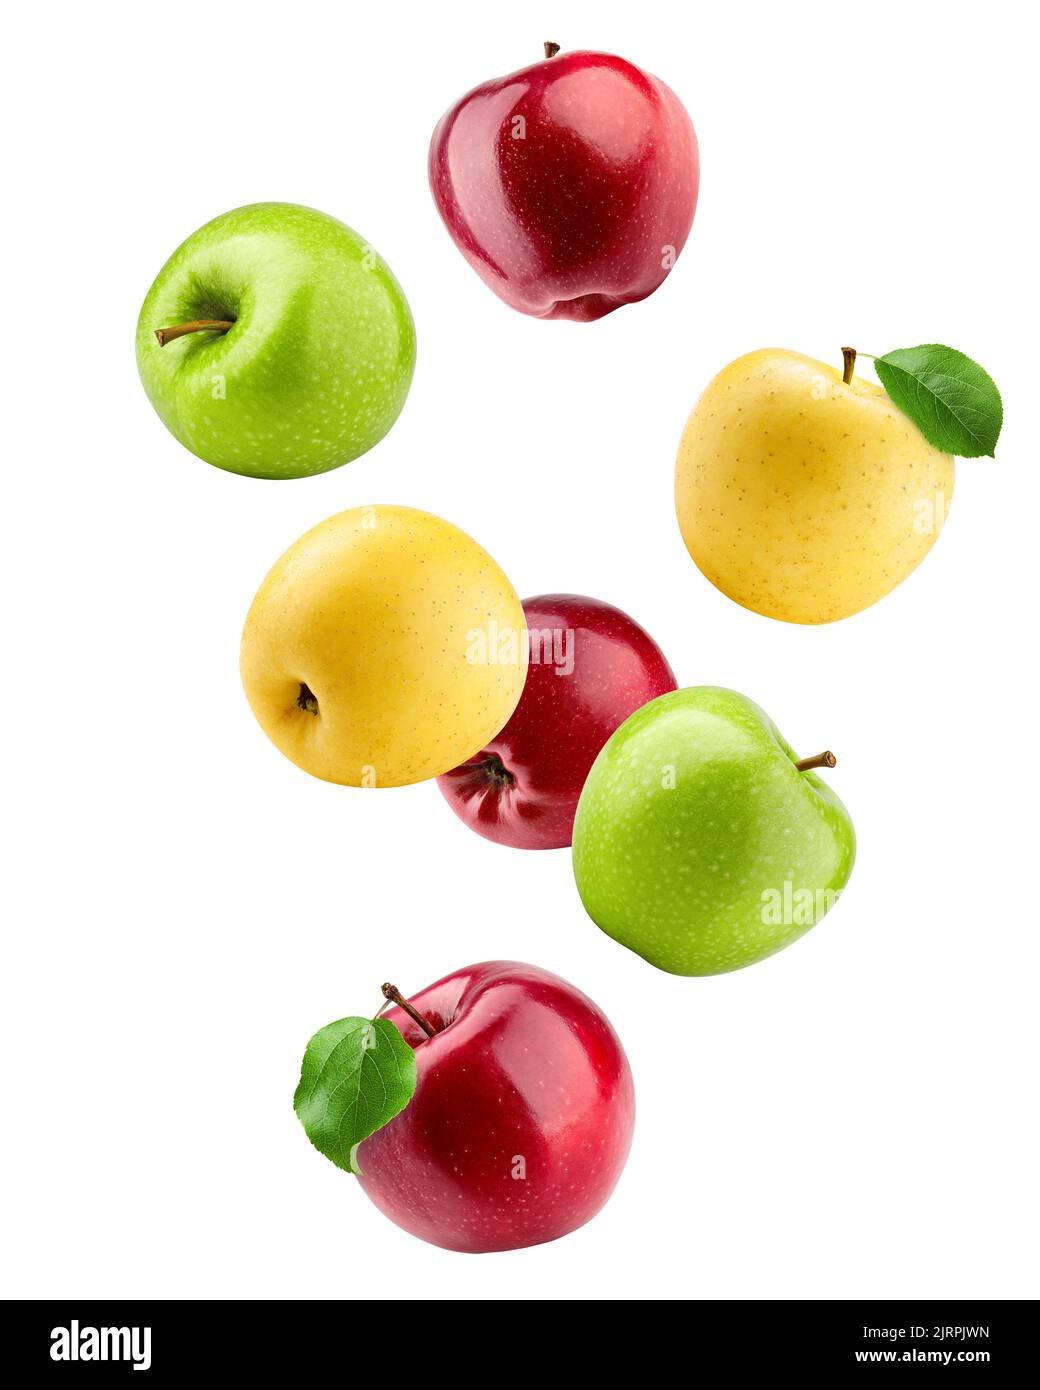 Pommes en chute de couleur, fruits rouges verts et jaunes, isolés sur fond blanc, chemin de coupure, pleine profondeur de champ Banque D'Images